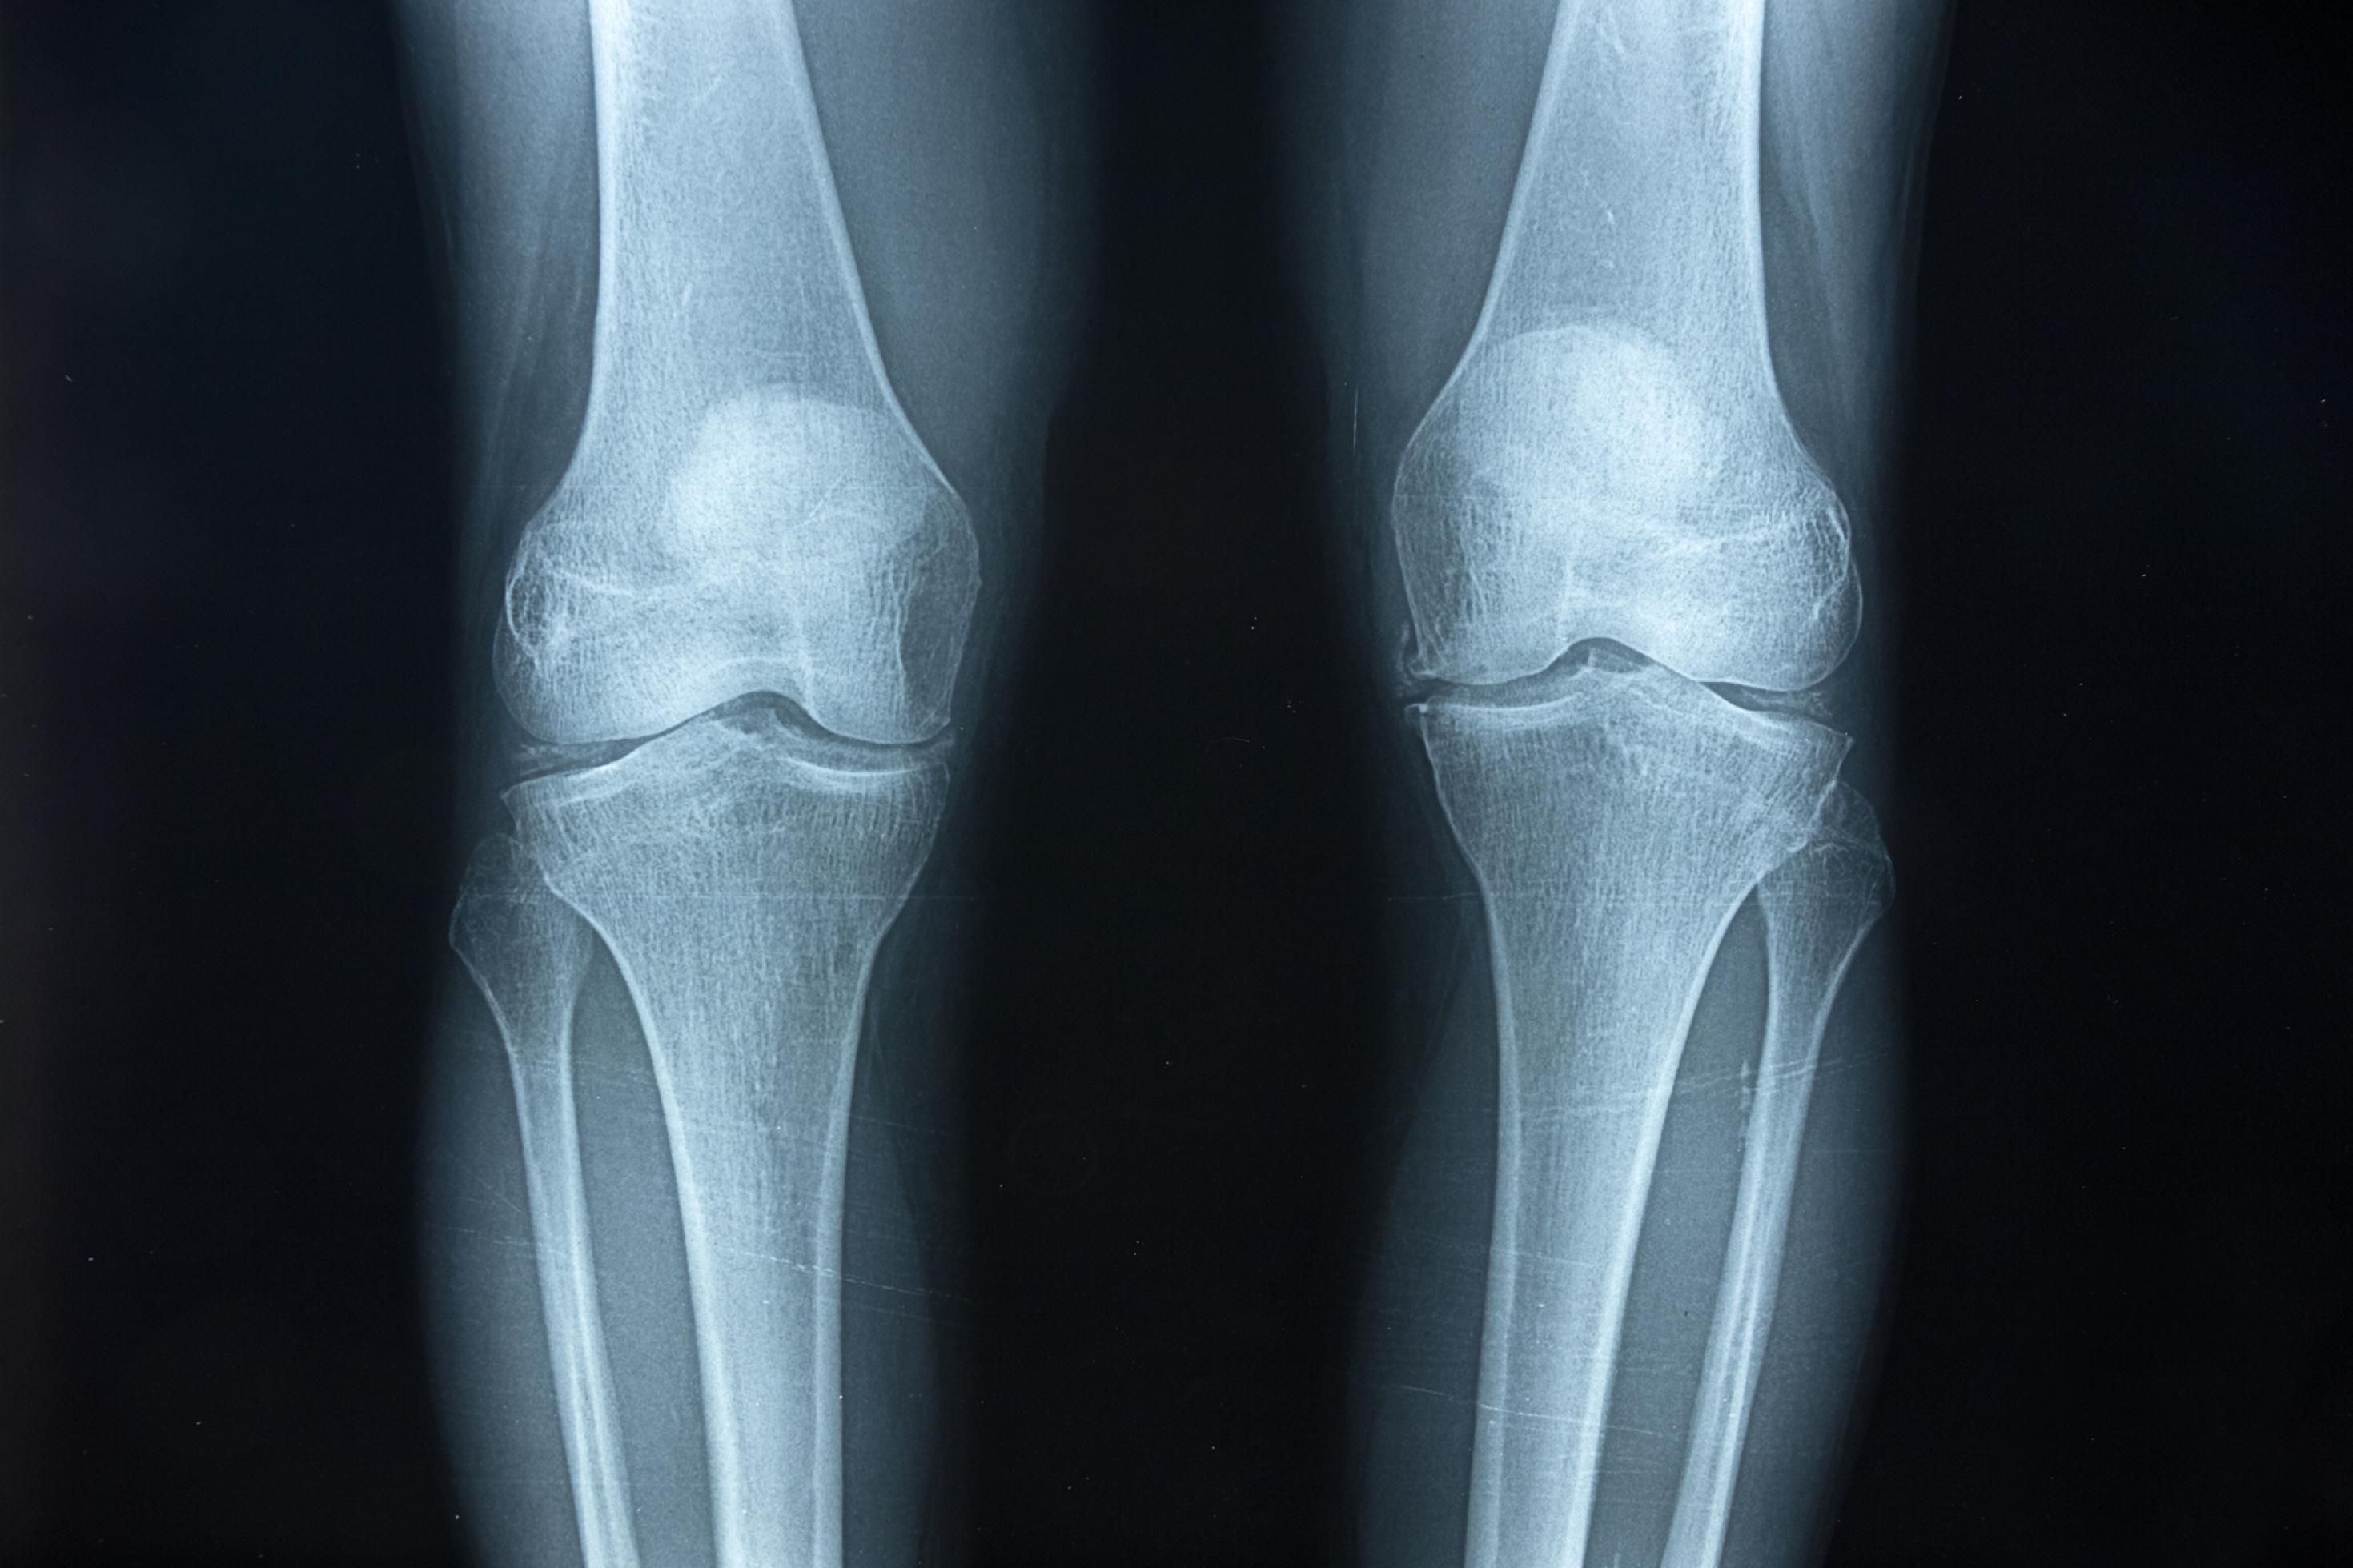 Das schwarzweiße Röntgenbild zeigt die beiden massiven Kniegelenke eines heutigen Menschen und jeweils ein Stück der Oberschenkelknochen sowie der Unterschenkel. Die Knochen im Gelenk stehen etwas schräg aufeinander, weil das Becken beim aufrecht gehenden Menschen breiter ist als bei Affen. So lässt sich auch an fossilen Knochen erkennen, ob sich ein Lebewesen einst zweibeinig fortbewegt hat.